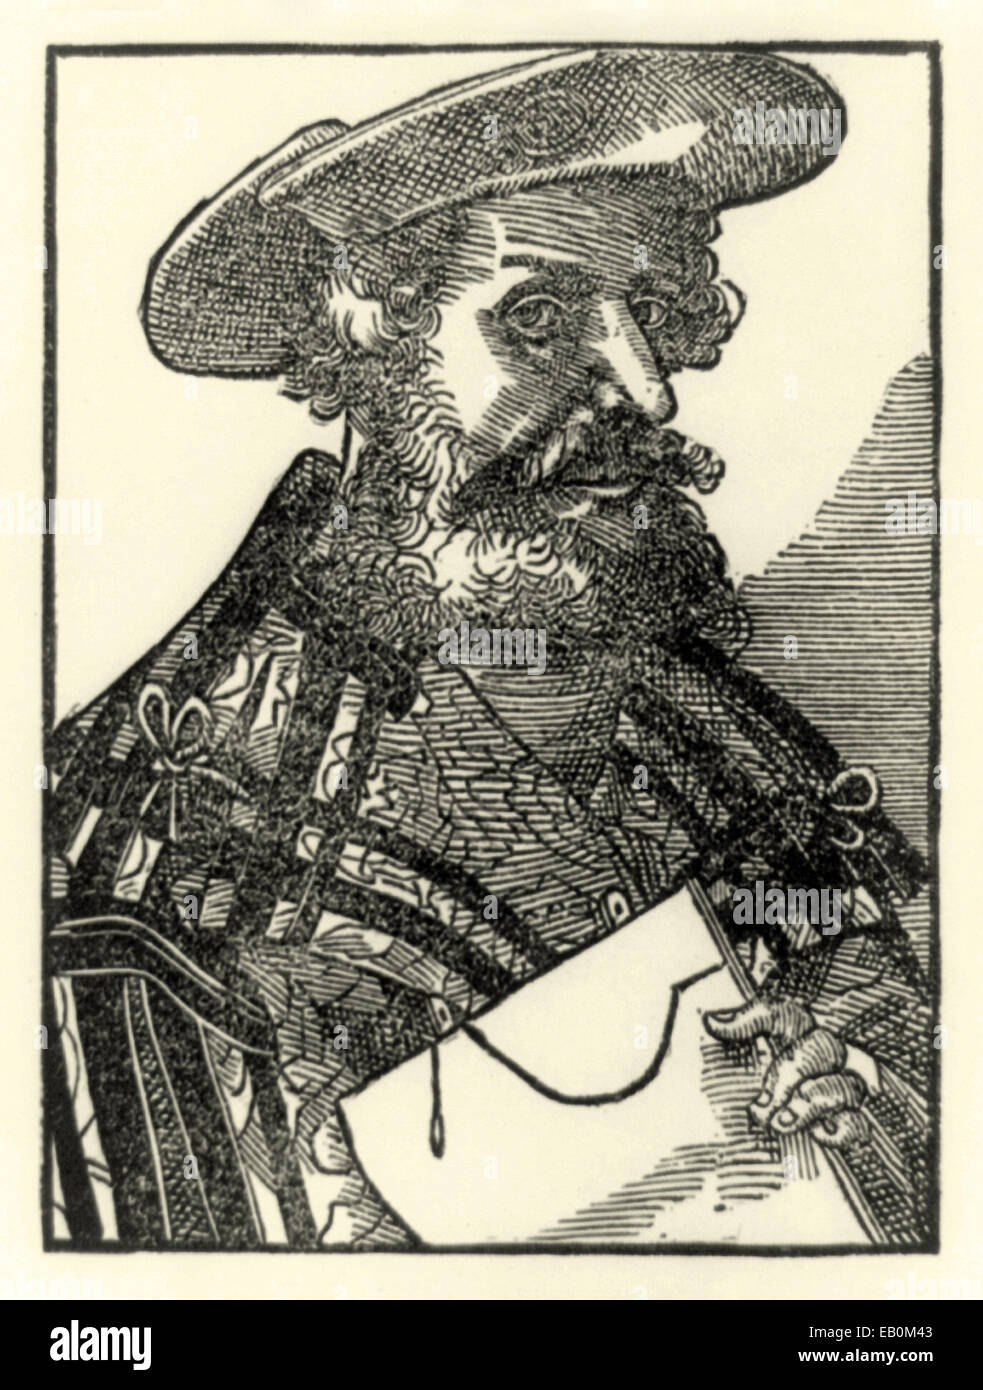 Holzschnitt-Porträt von Claudius Ptolemäus (90-168AD) veröffentlichte im Jahre 1587. Siehe Beschreibung für mehr Informationen. Stockfoto